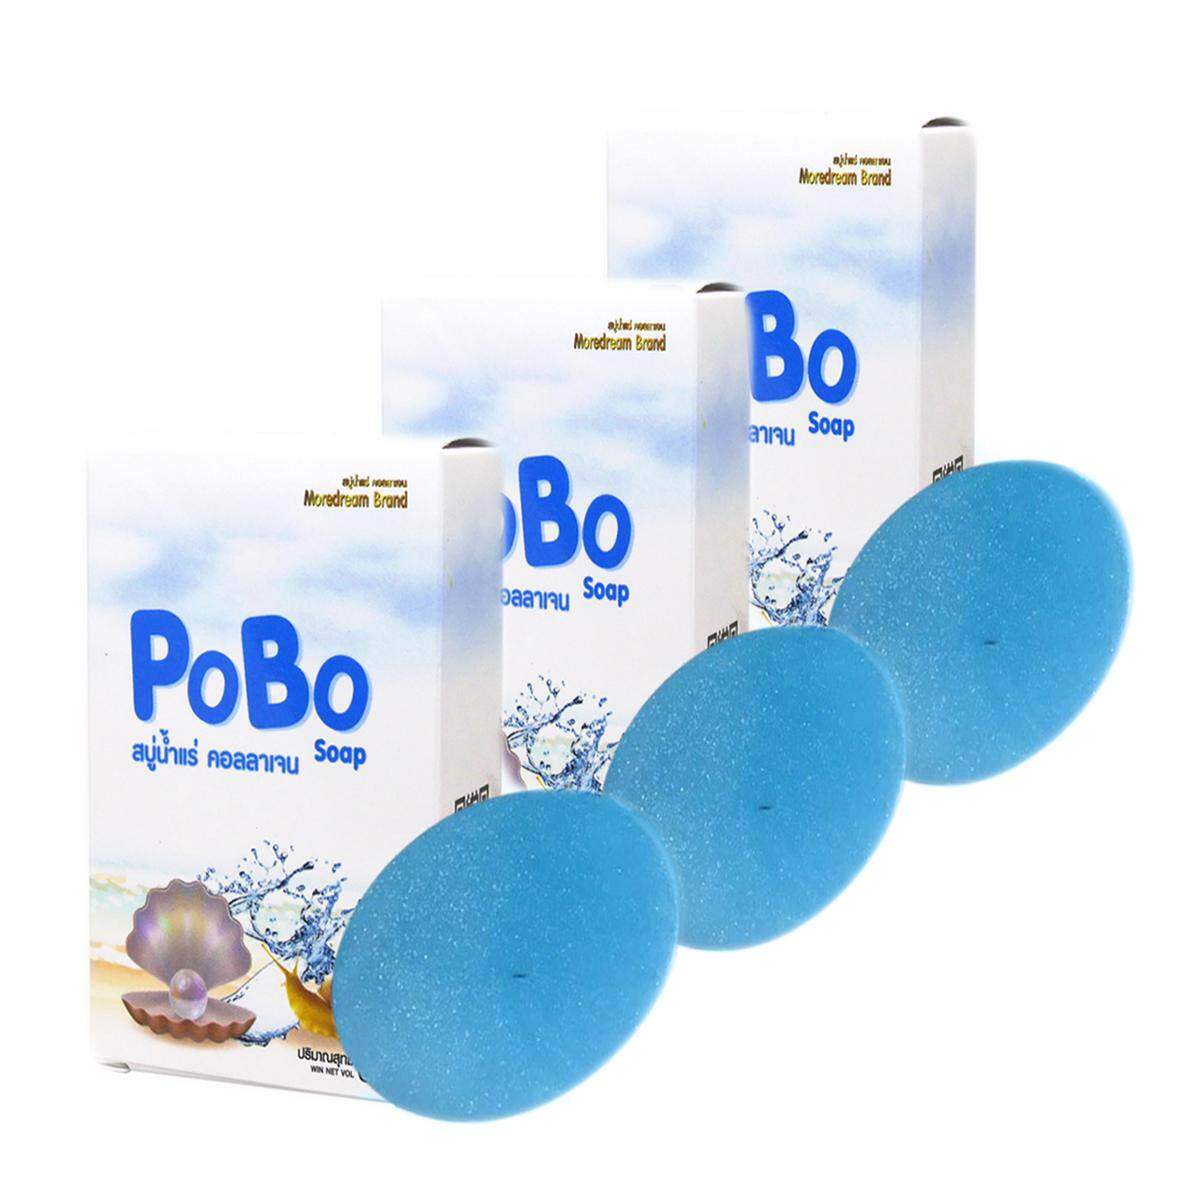 สบู่ PoBo สูตรน้ำแร่คอลลาเจน 60 กรัม (3ก้อน )